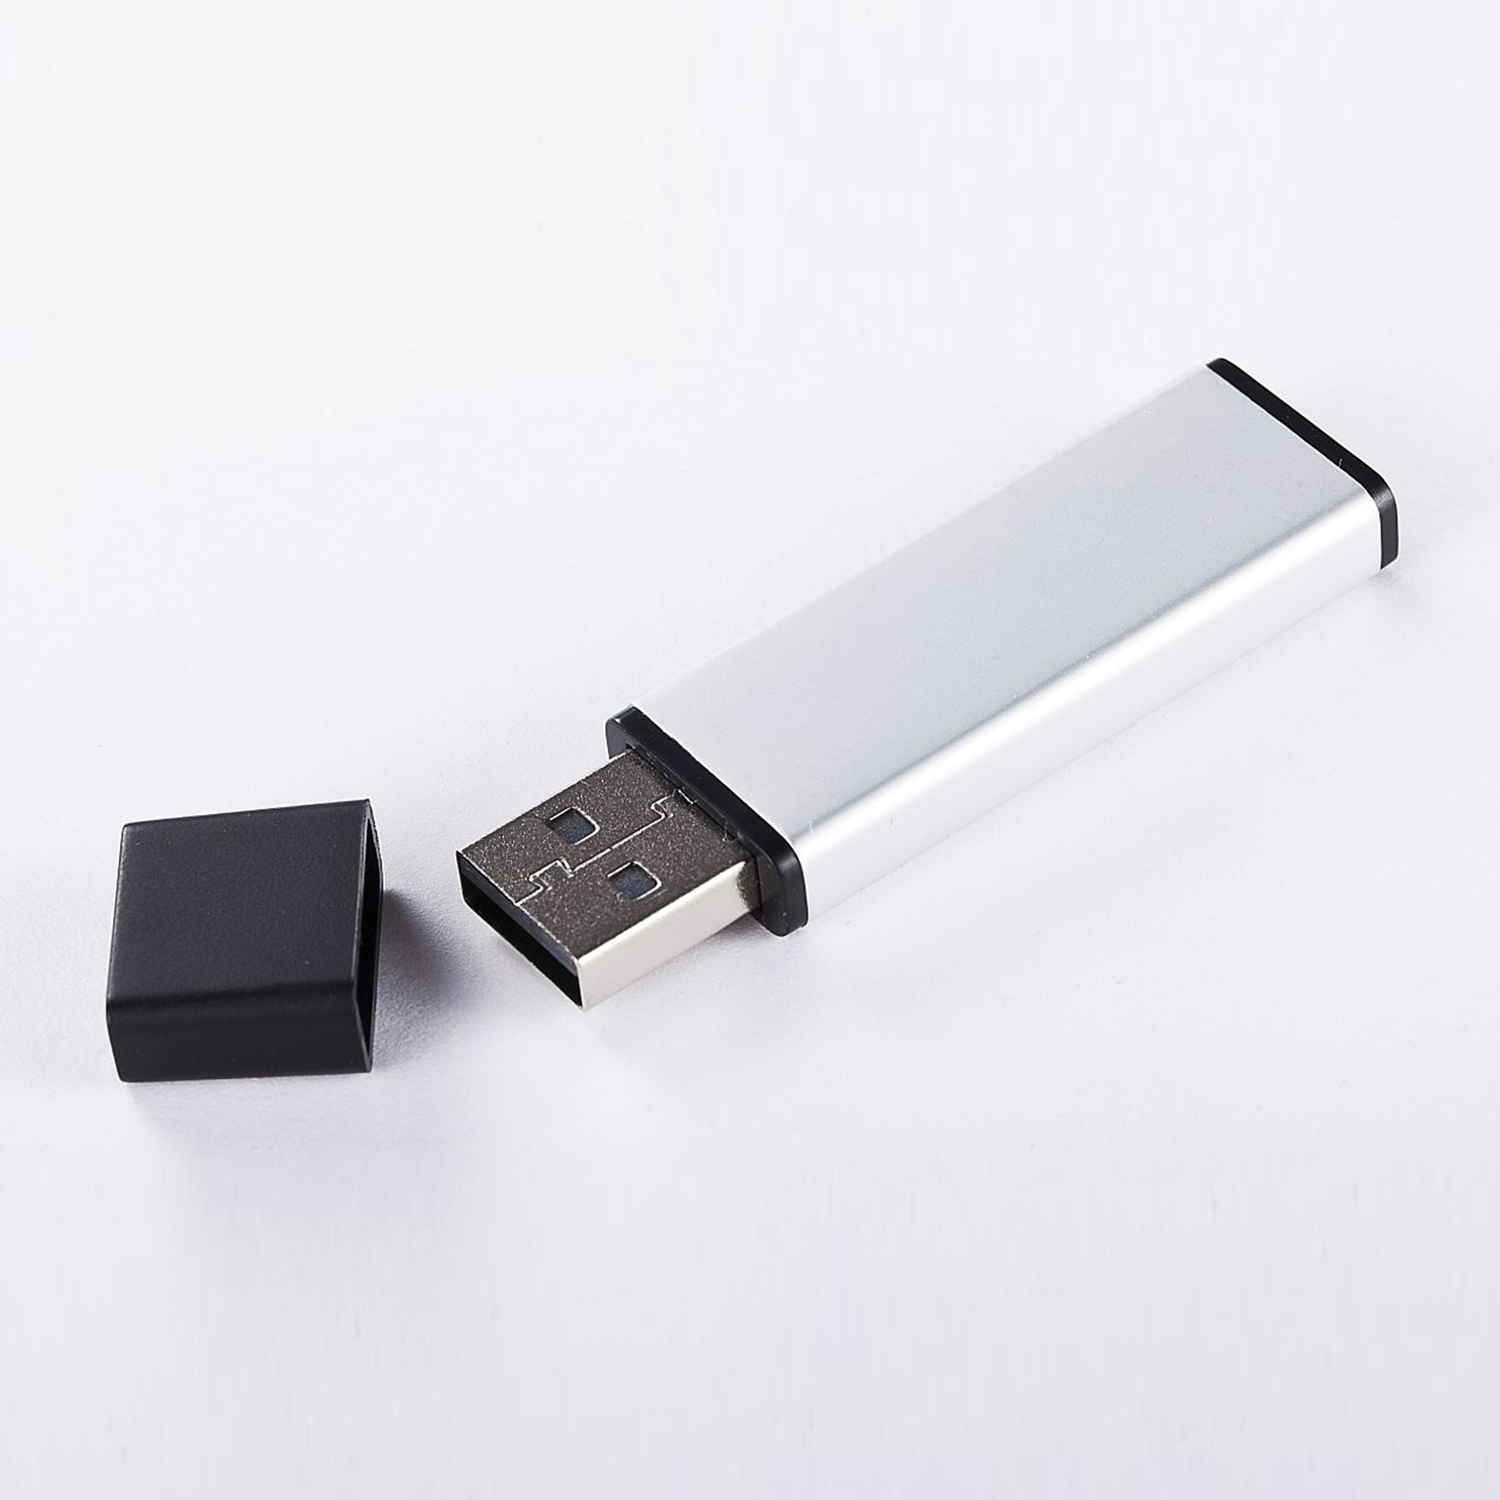 16 (ALUMINIUM, 2.0 16 USB XLYNE Stick GB GB) USB -